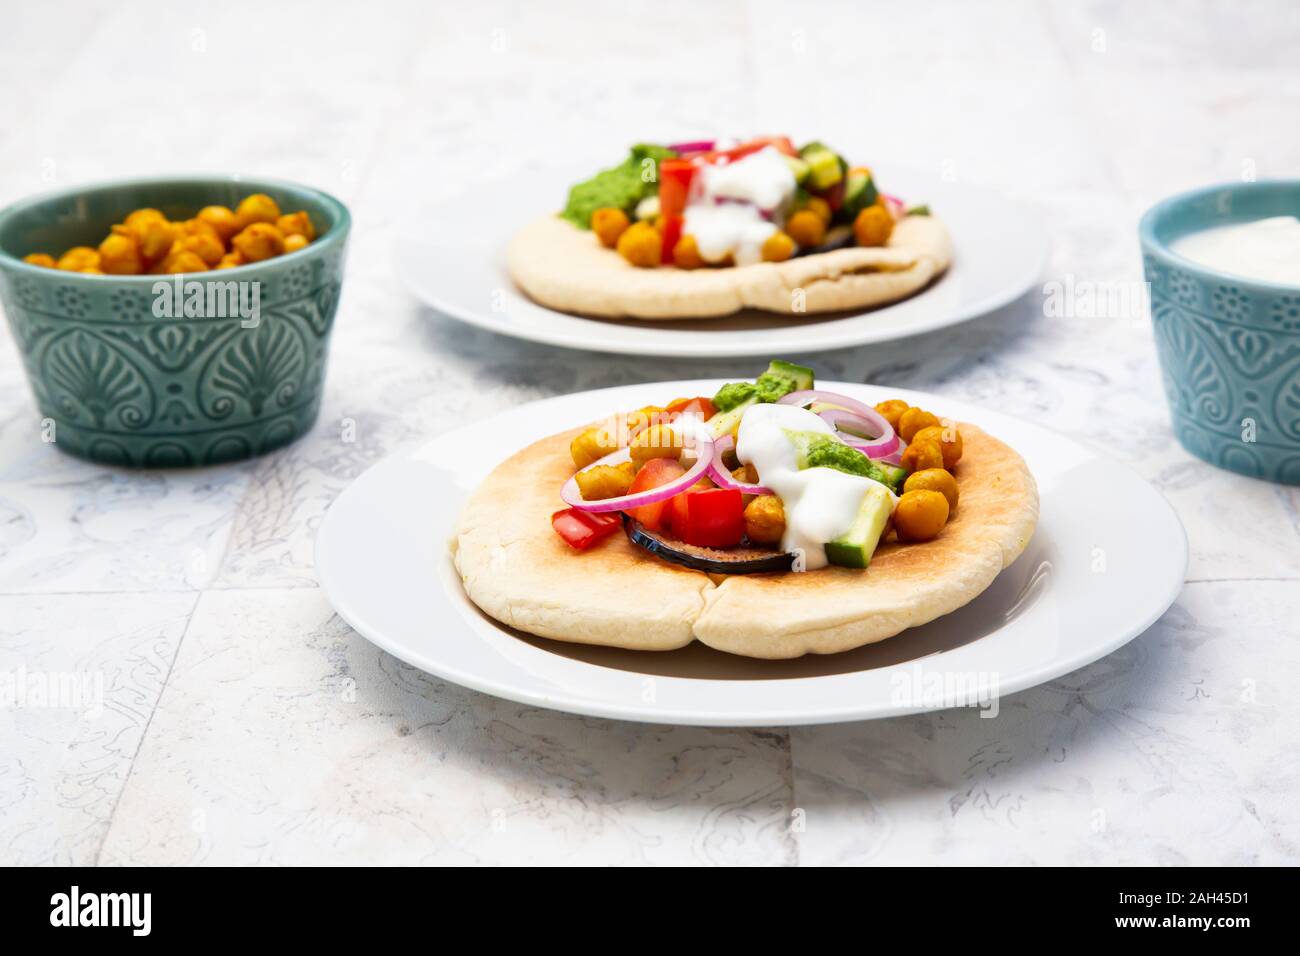 Israelische sabich mit pita Brot, Aubergine, Kichererbsen, Zwiebeln, Tomaten, Gurken, Joghurt und zhug Sauce Stockfoto